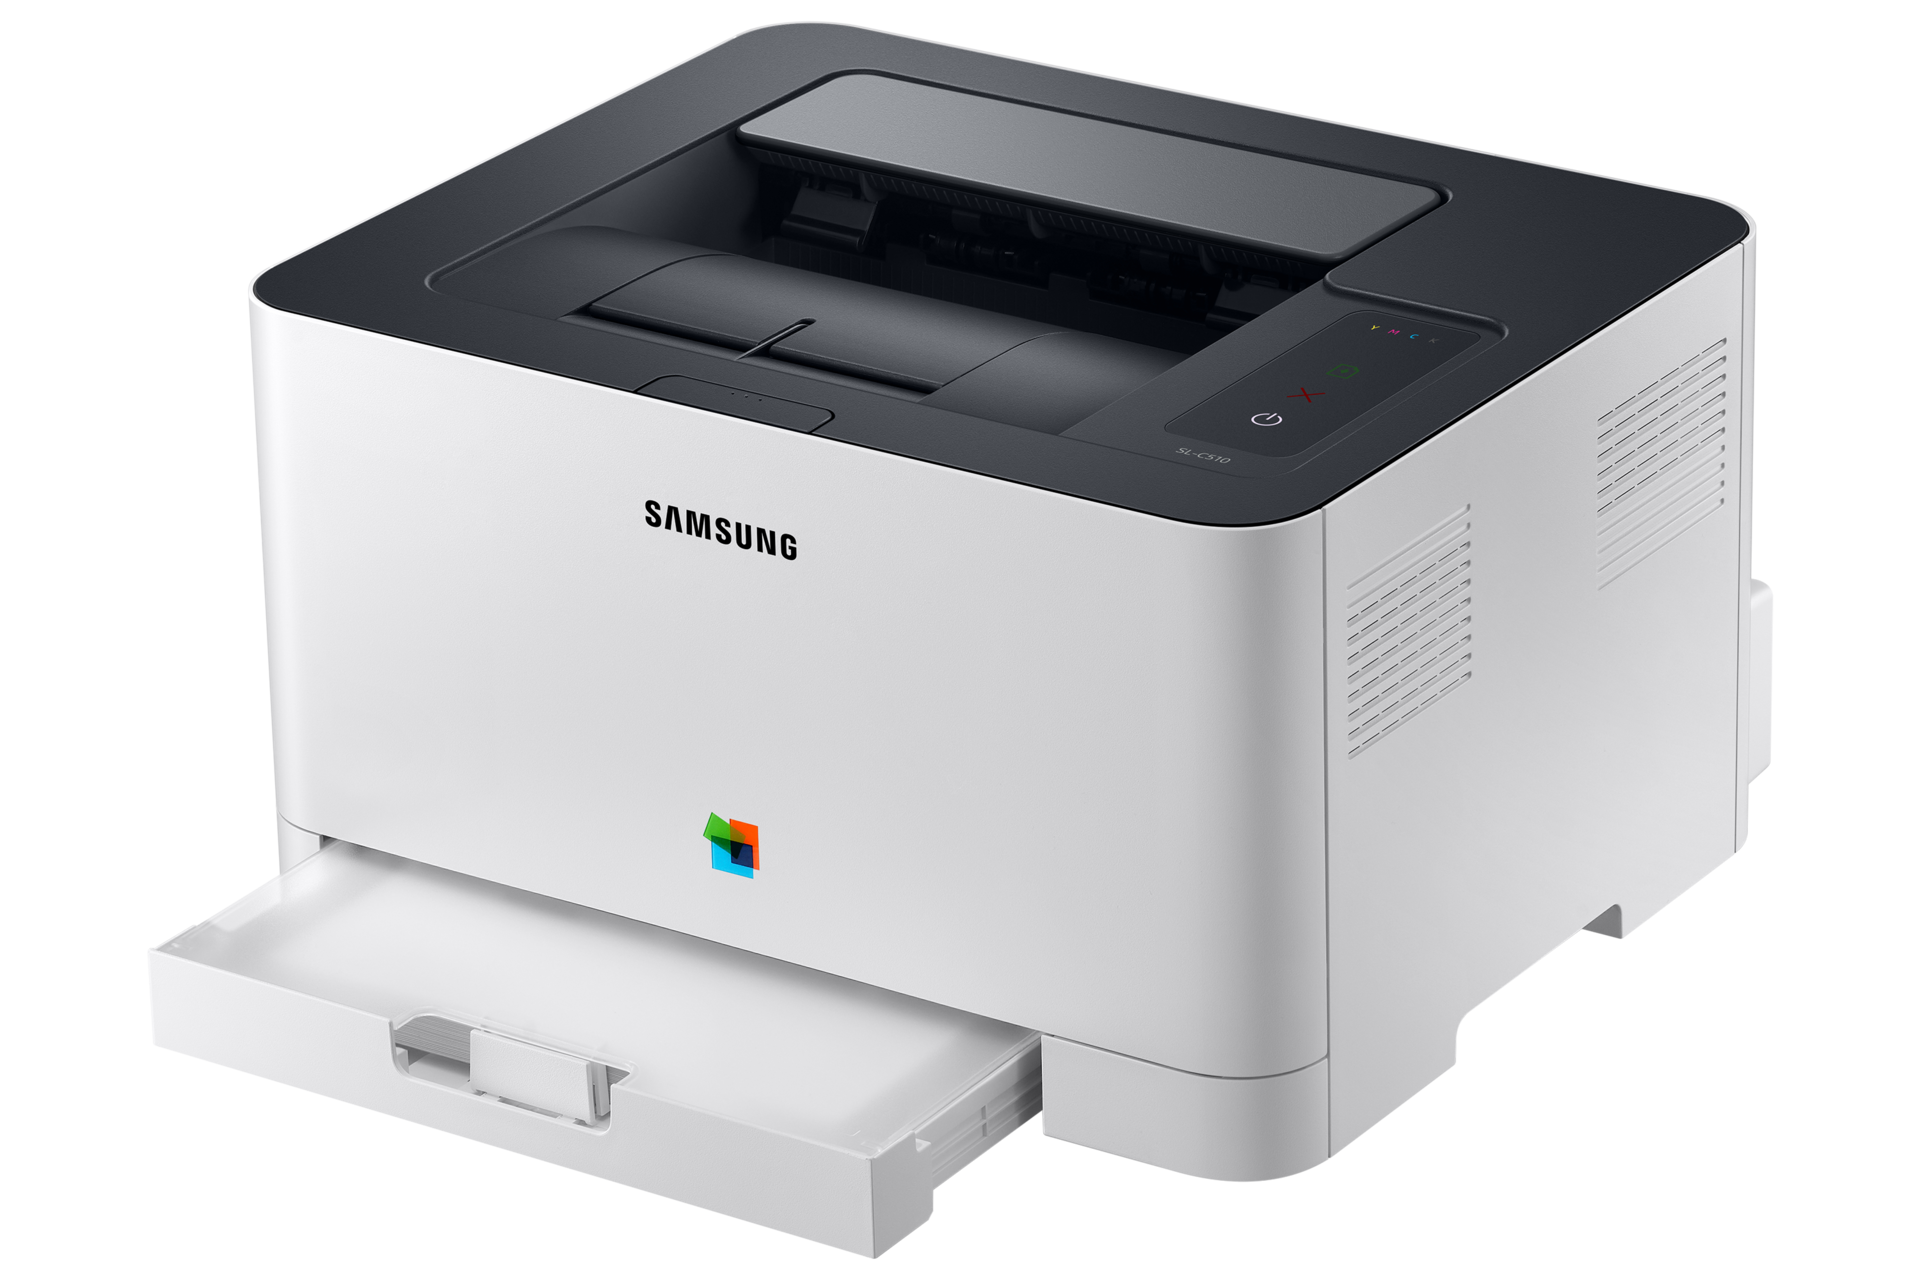 컬러 레이저 프린터 18/4 ppm 화이트 제품 우상단, 조작부, A4 장착 이미지